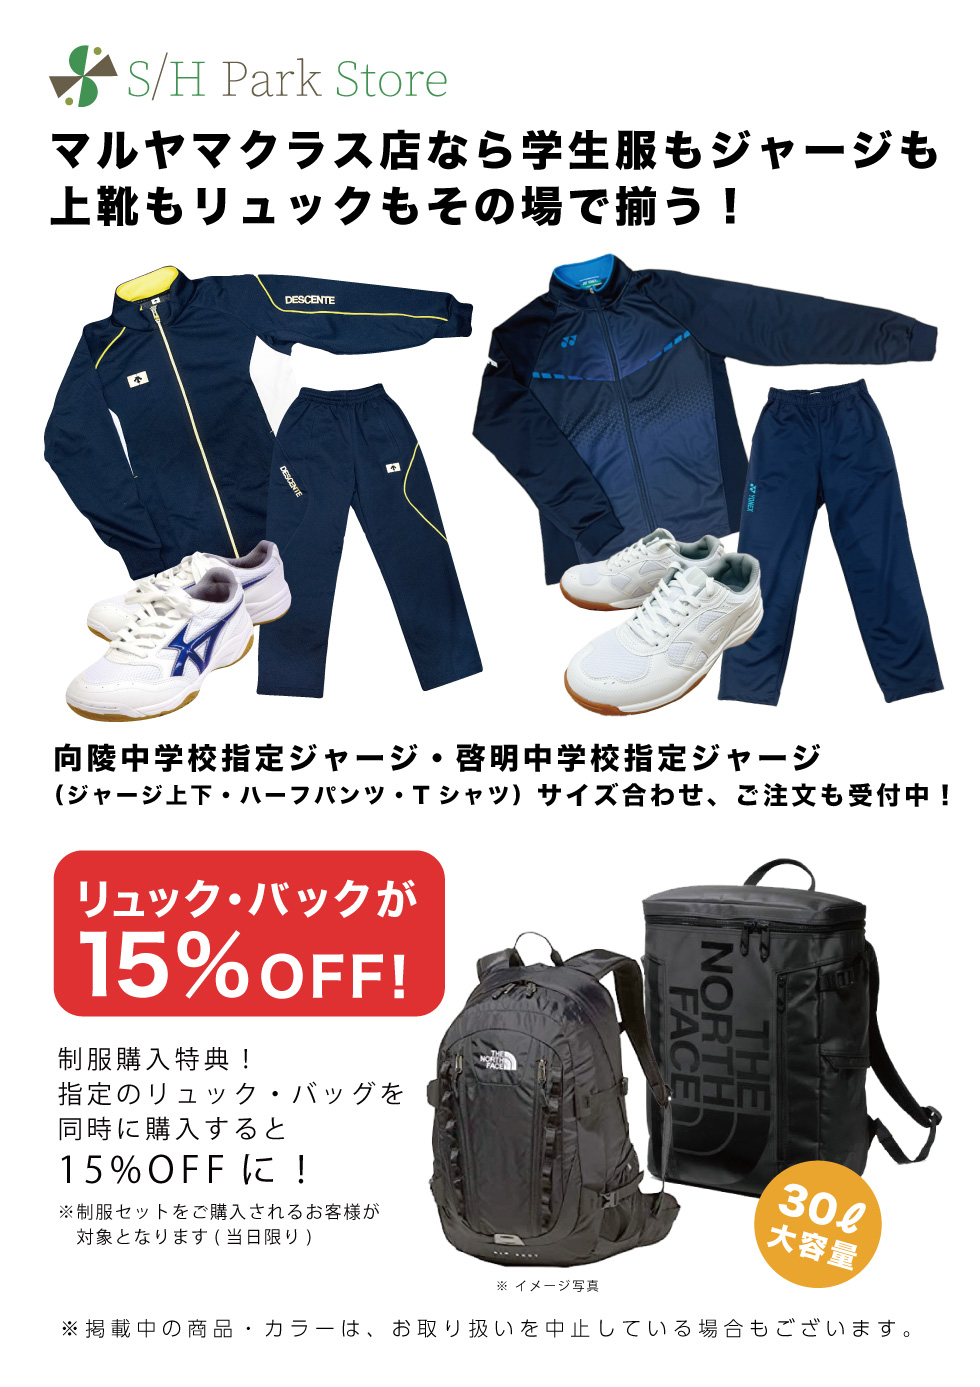 札幌スポーツ館 マルヤマクラス店 学生服販売